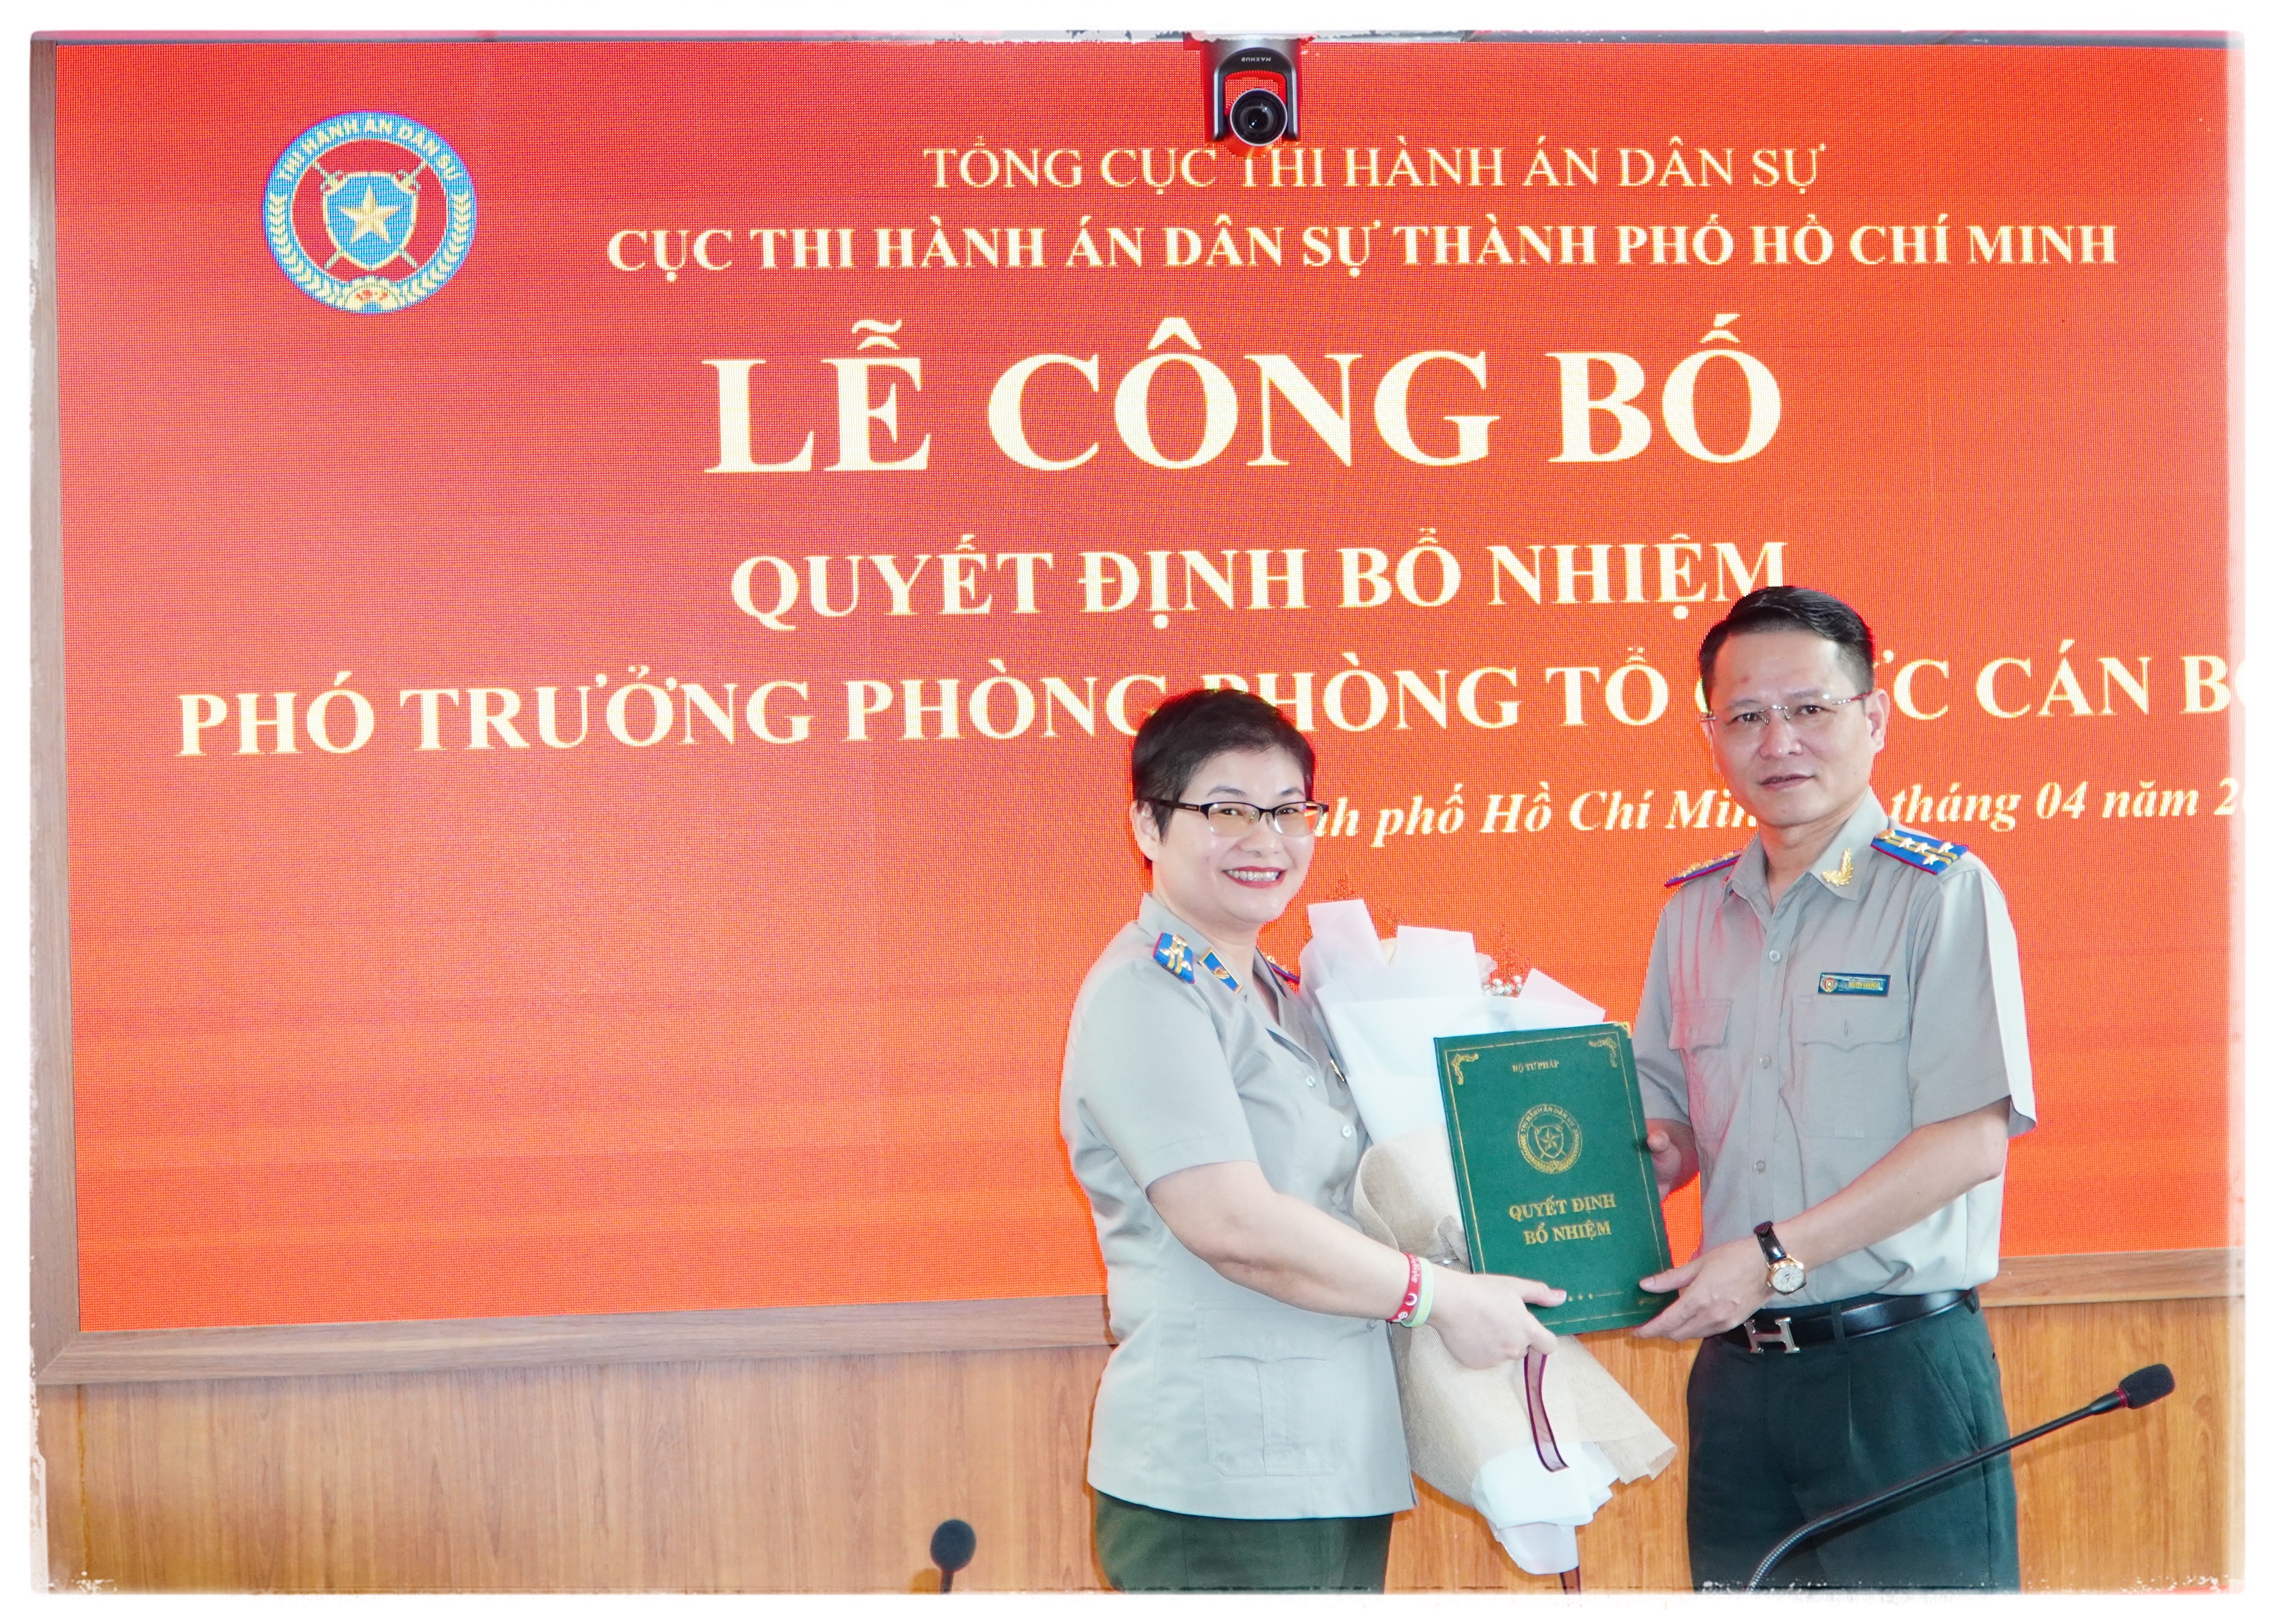 Lễ công bố Quyết định bổ nhiệm Phó trưởng, Phòng TCCB - Cục THADS Thành phố Hồ Chí Minh